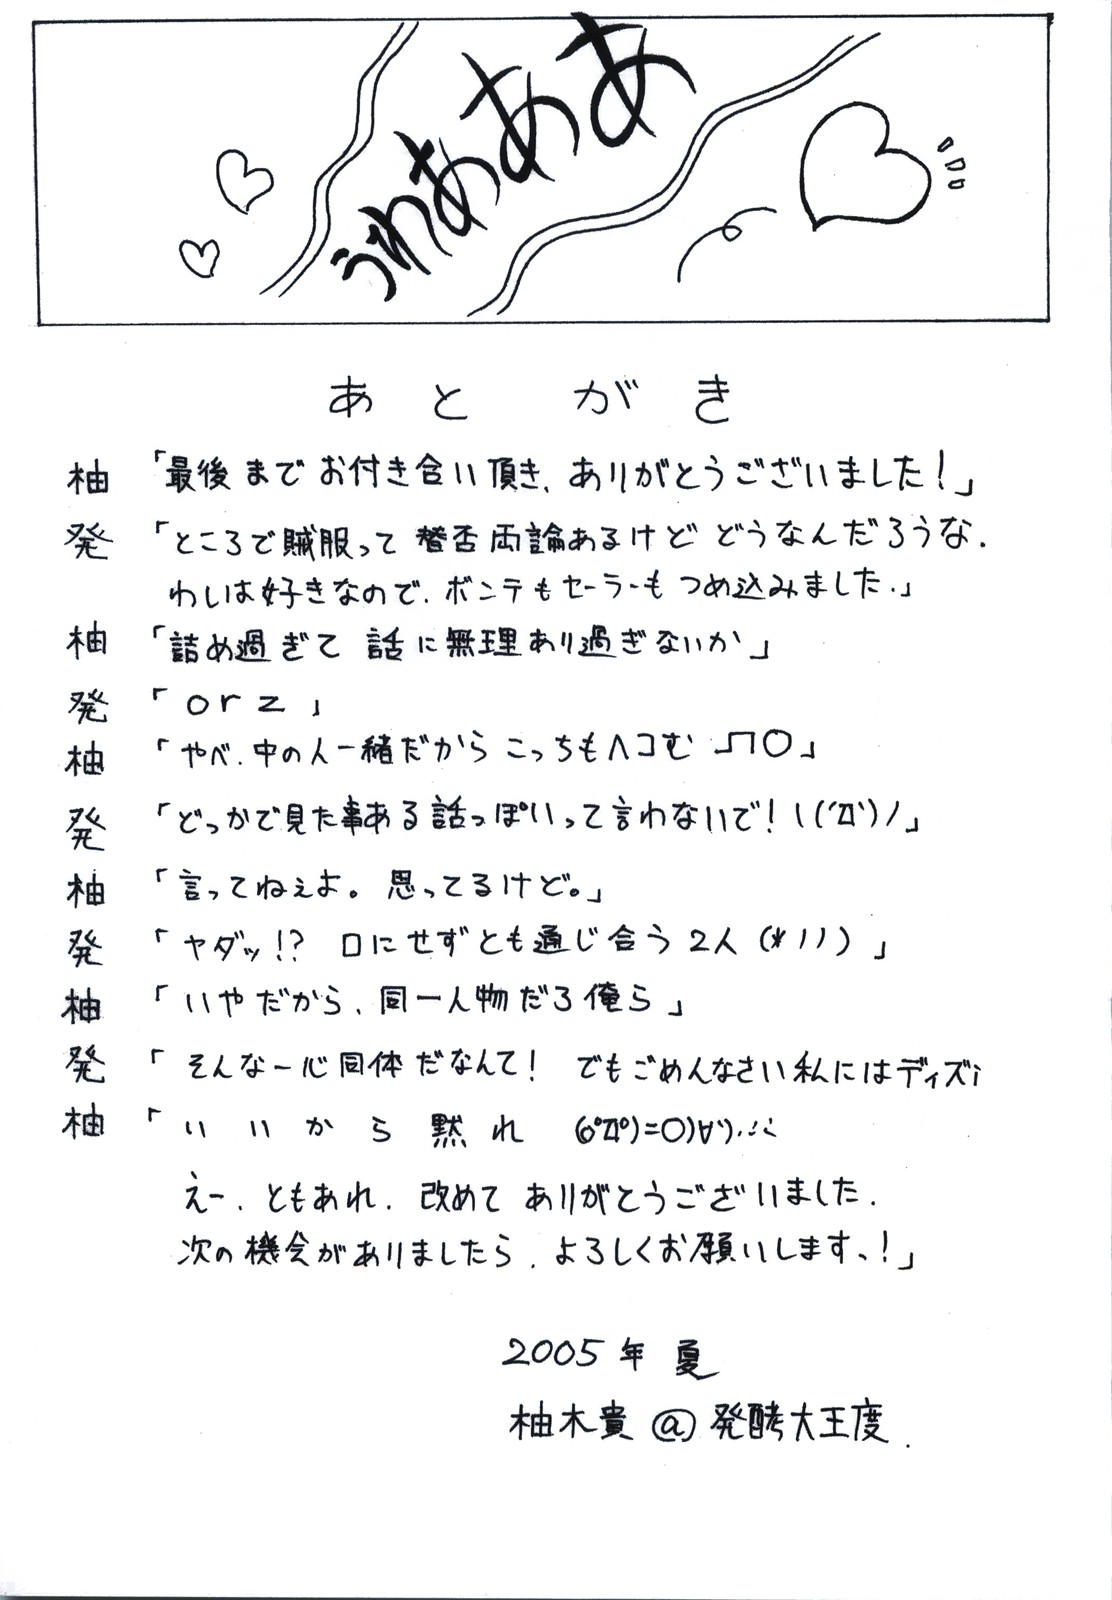 (C68) [DUAL BEAT (Yukitaka)] BEAT SWEET (Guilty Gear) (C68) [DUAL BEAT (柚木貴)] BEAT SWEET (ギルティギア)